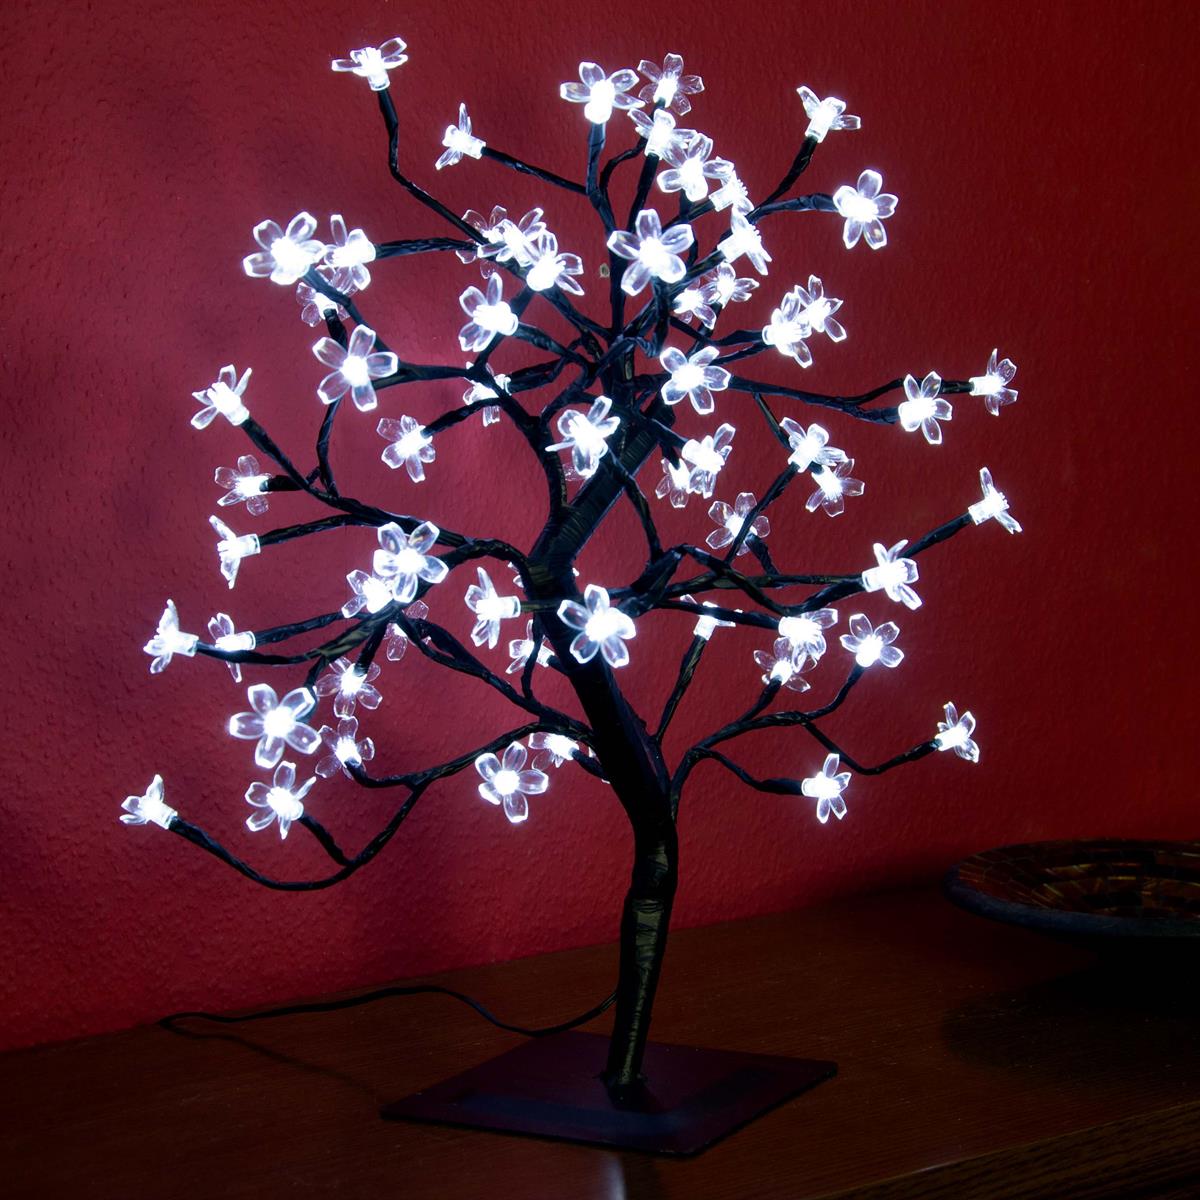 64 LED Baum mit beleuchteten Blüten Größe 45 cm weiß Blütenbaum Trafo Timer